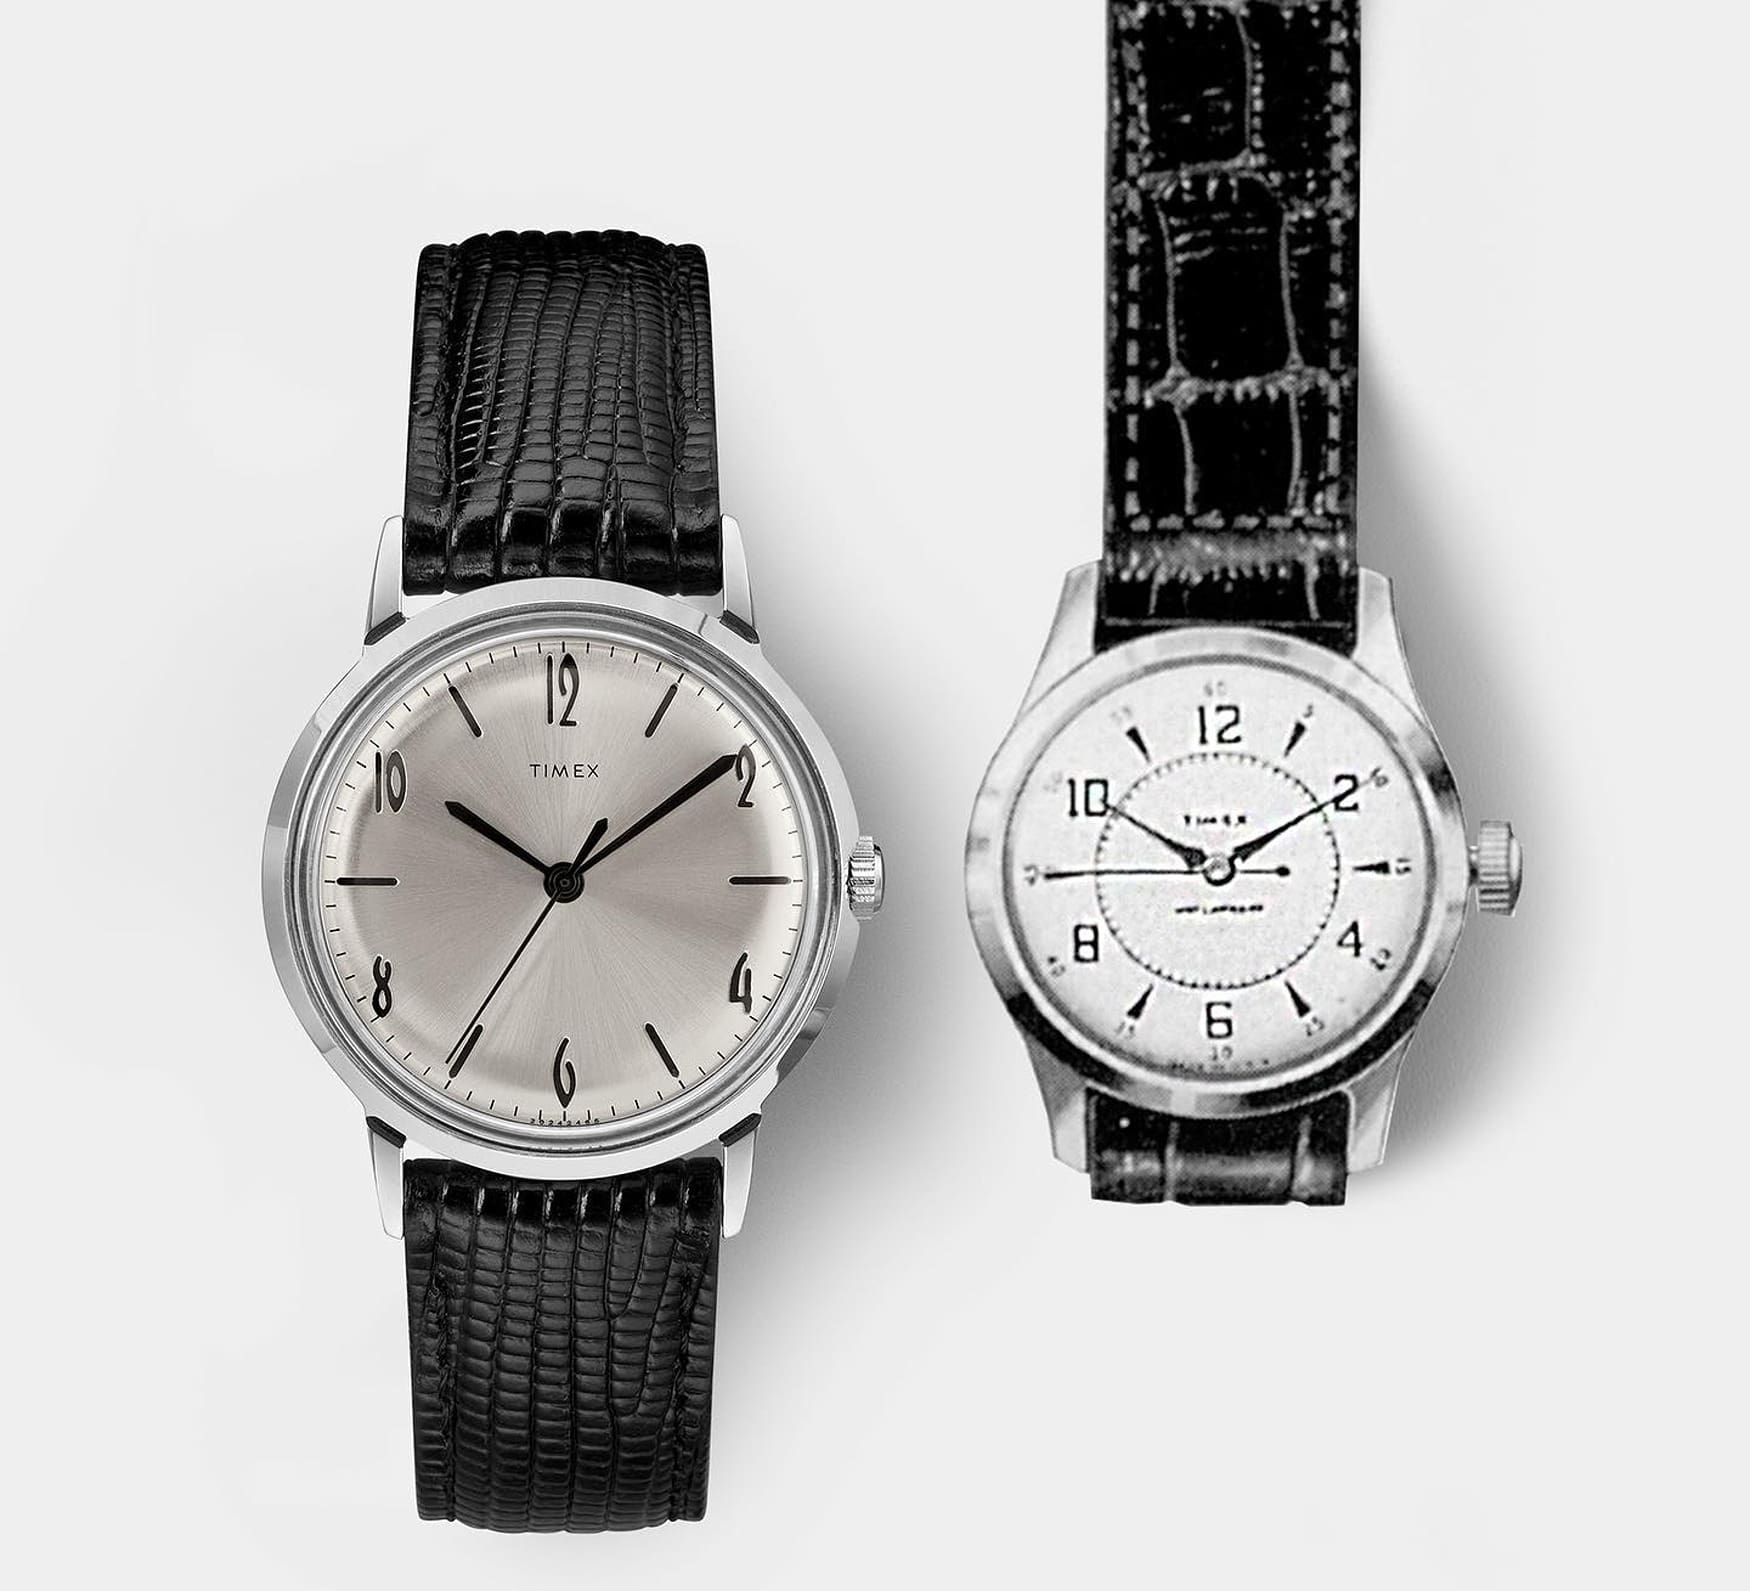 Timex Marlin Hand Wound 1960s Comparison